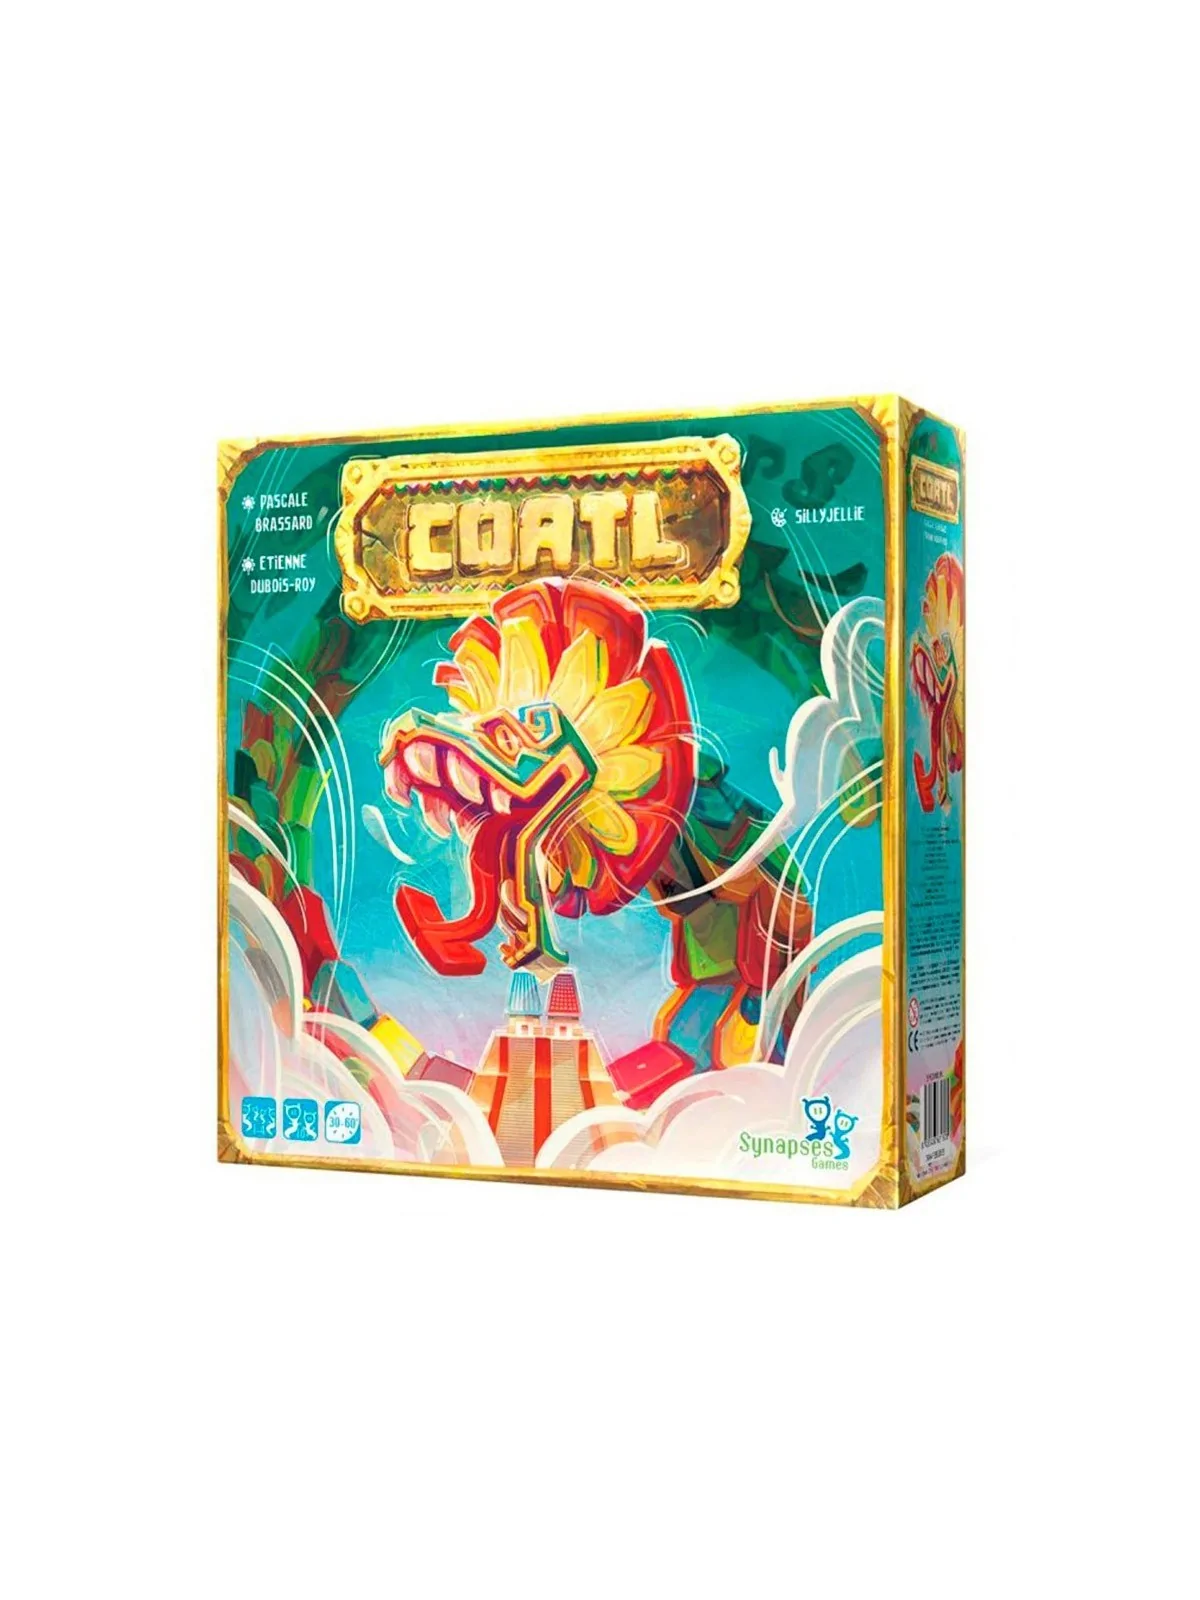 Comprar Coatl barato al mejor precio 15,25 € de Synapses Games